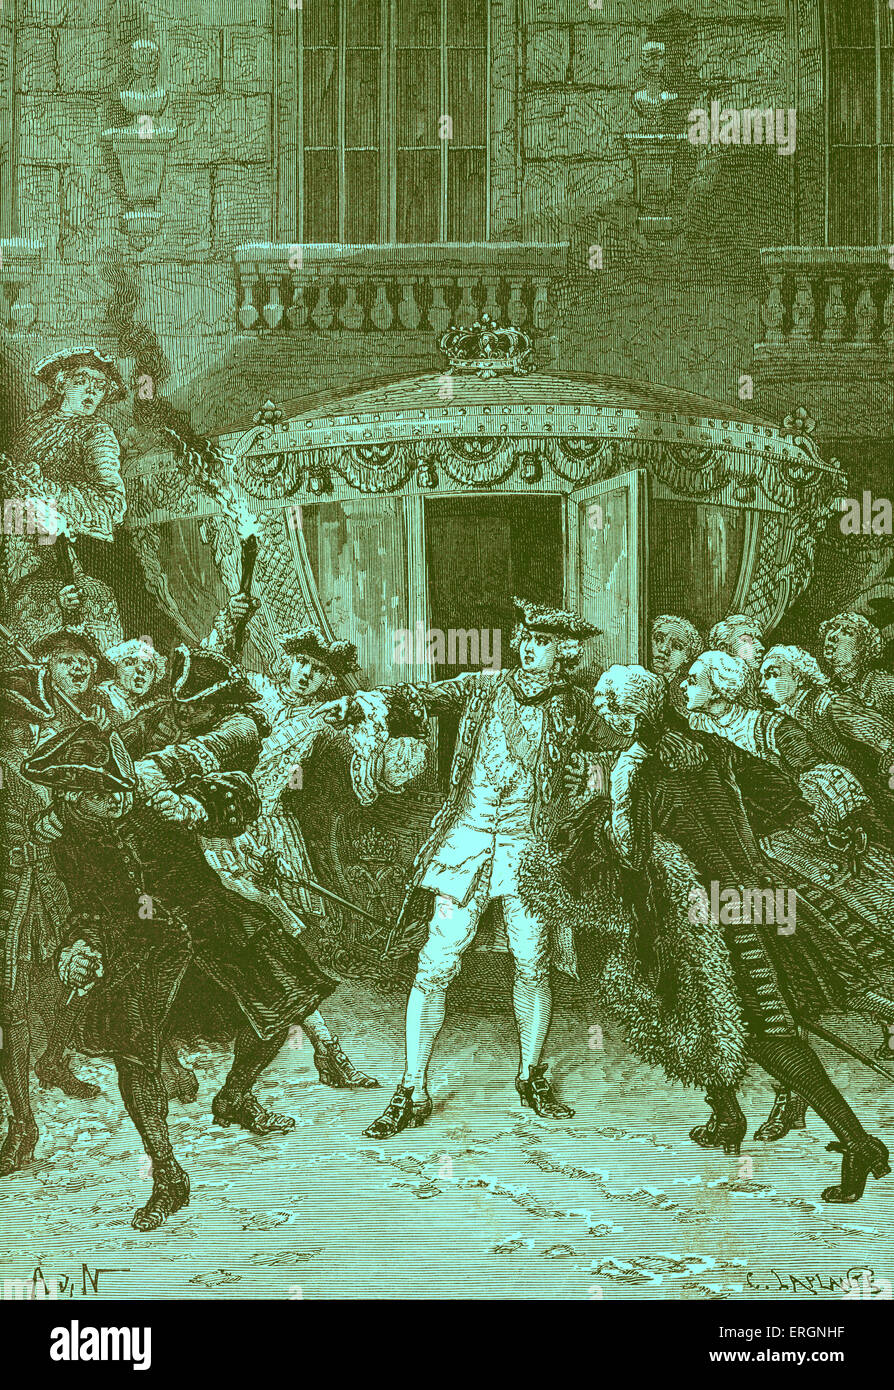 Am 5. Januar 1757, als Louis XV König von Frankreich wurde in seiner Kutsche, Robert-François Damiens stürzte vorwärts und stach ihn mit einem Messer. Er wurde als ein Königsmord verurteilt und verurteilt, gezeichnet und geviertelt. Robert-François Damiens, 9. Januar 1715 - 28. März 1757 Stockfoto